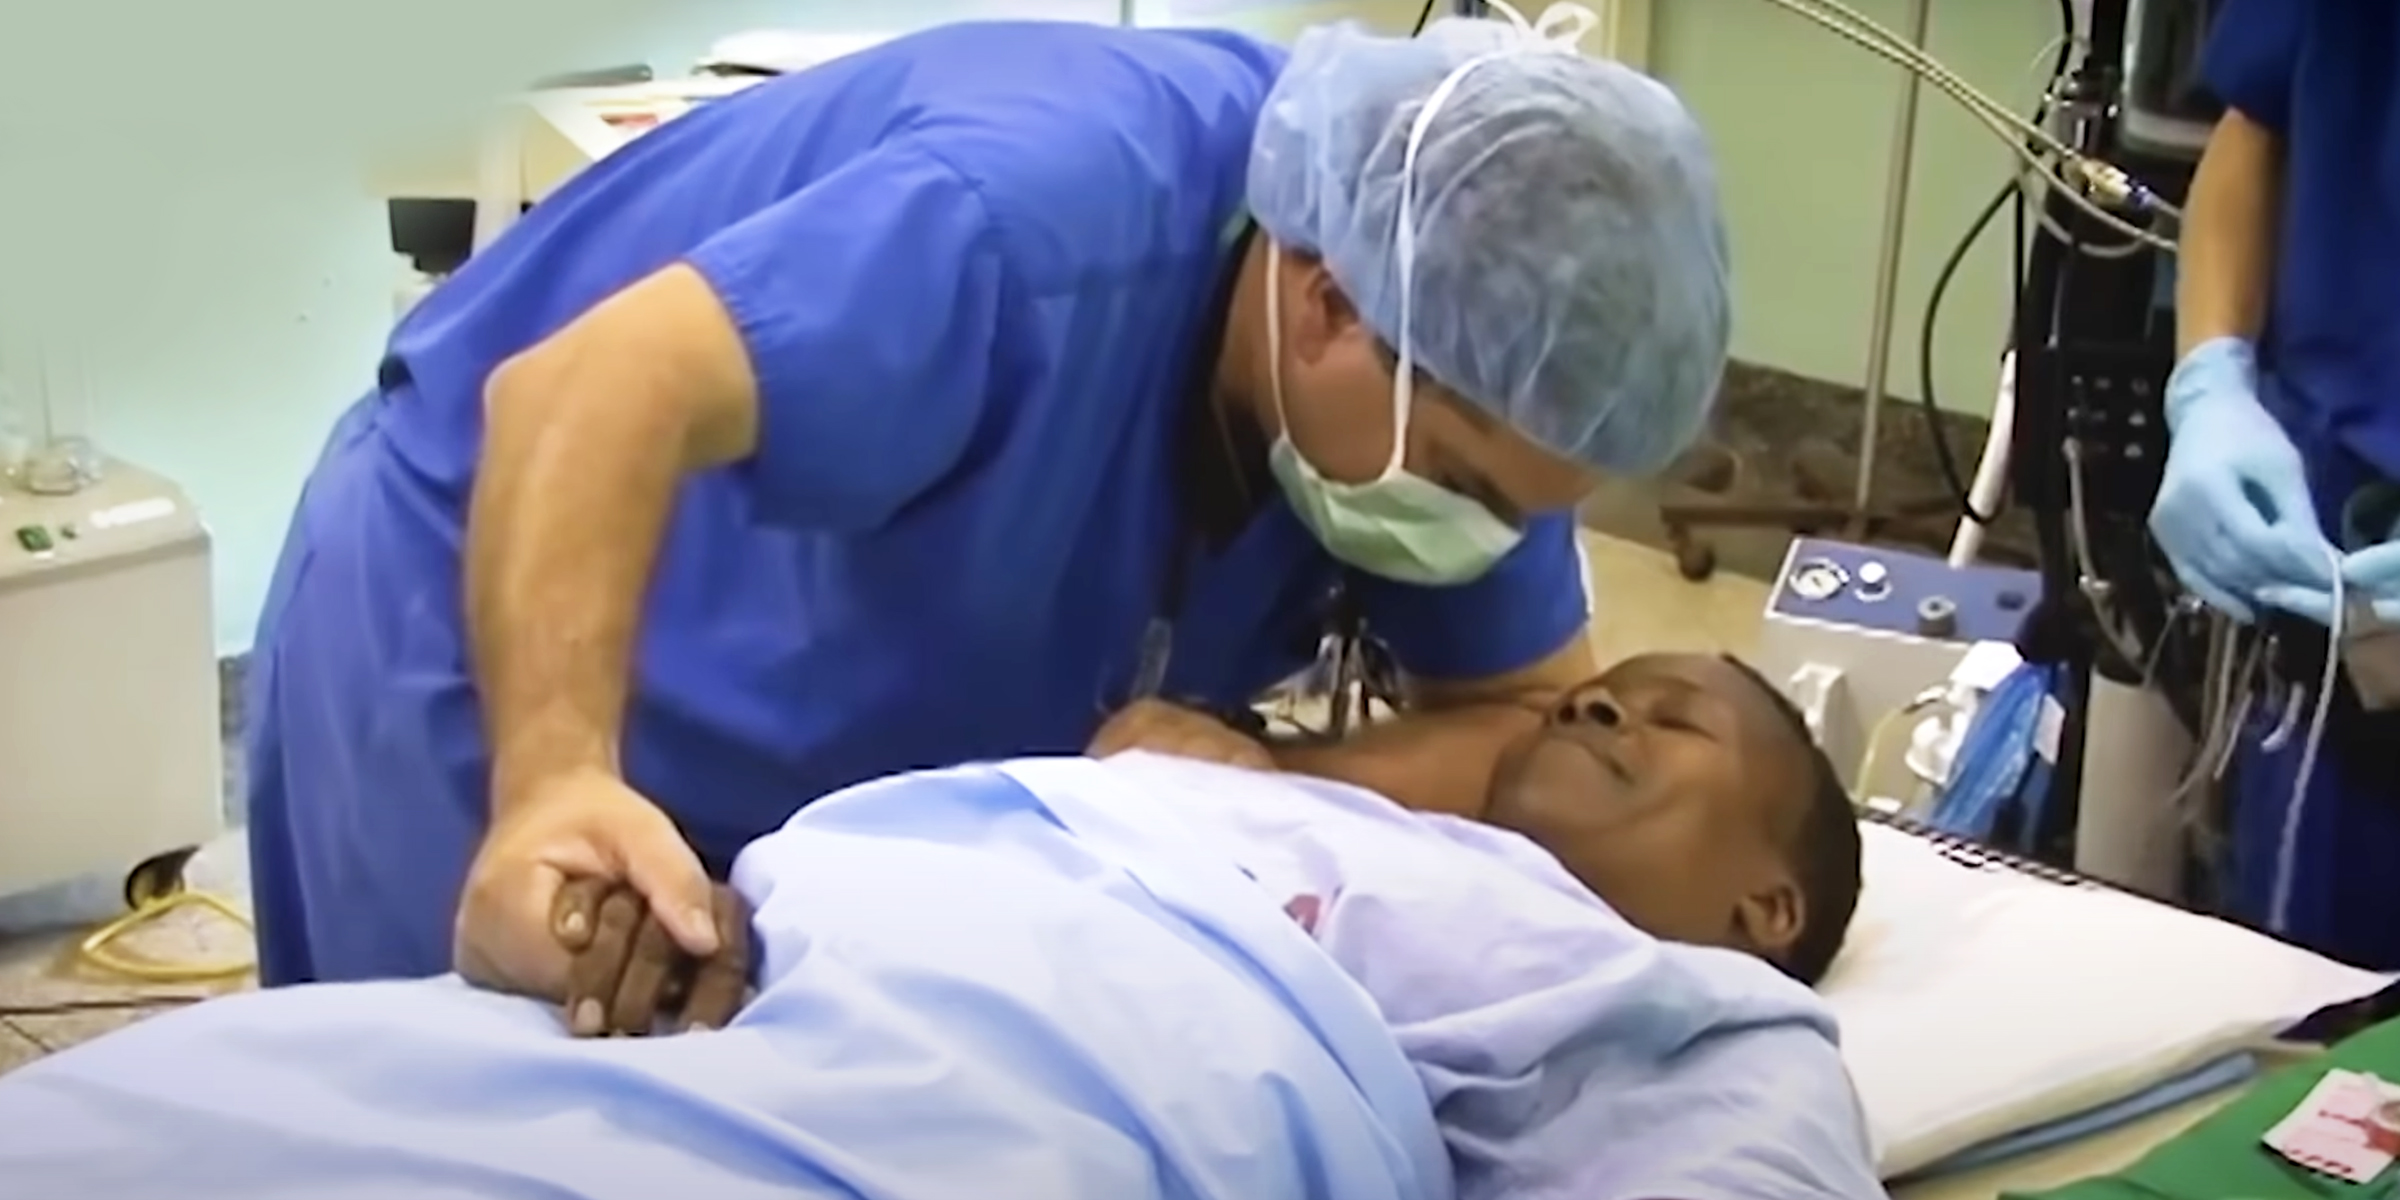 Dr. Michael Haglund im Operationssaal mit einem Patienten | Quelle: youtube.com/The700Club